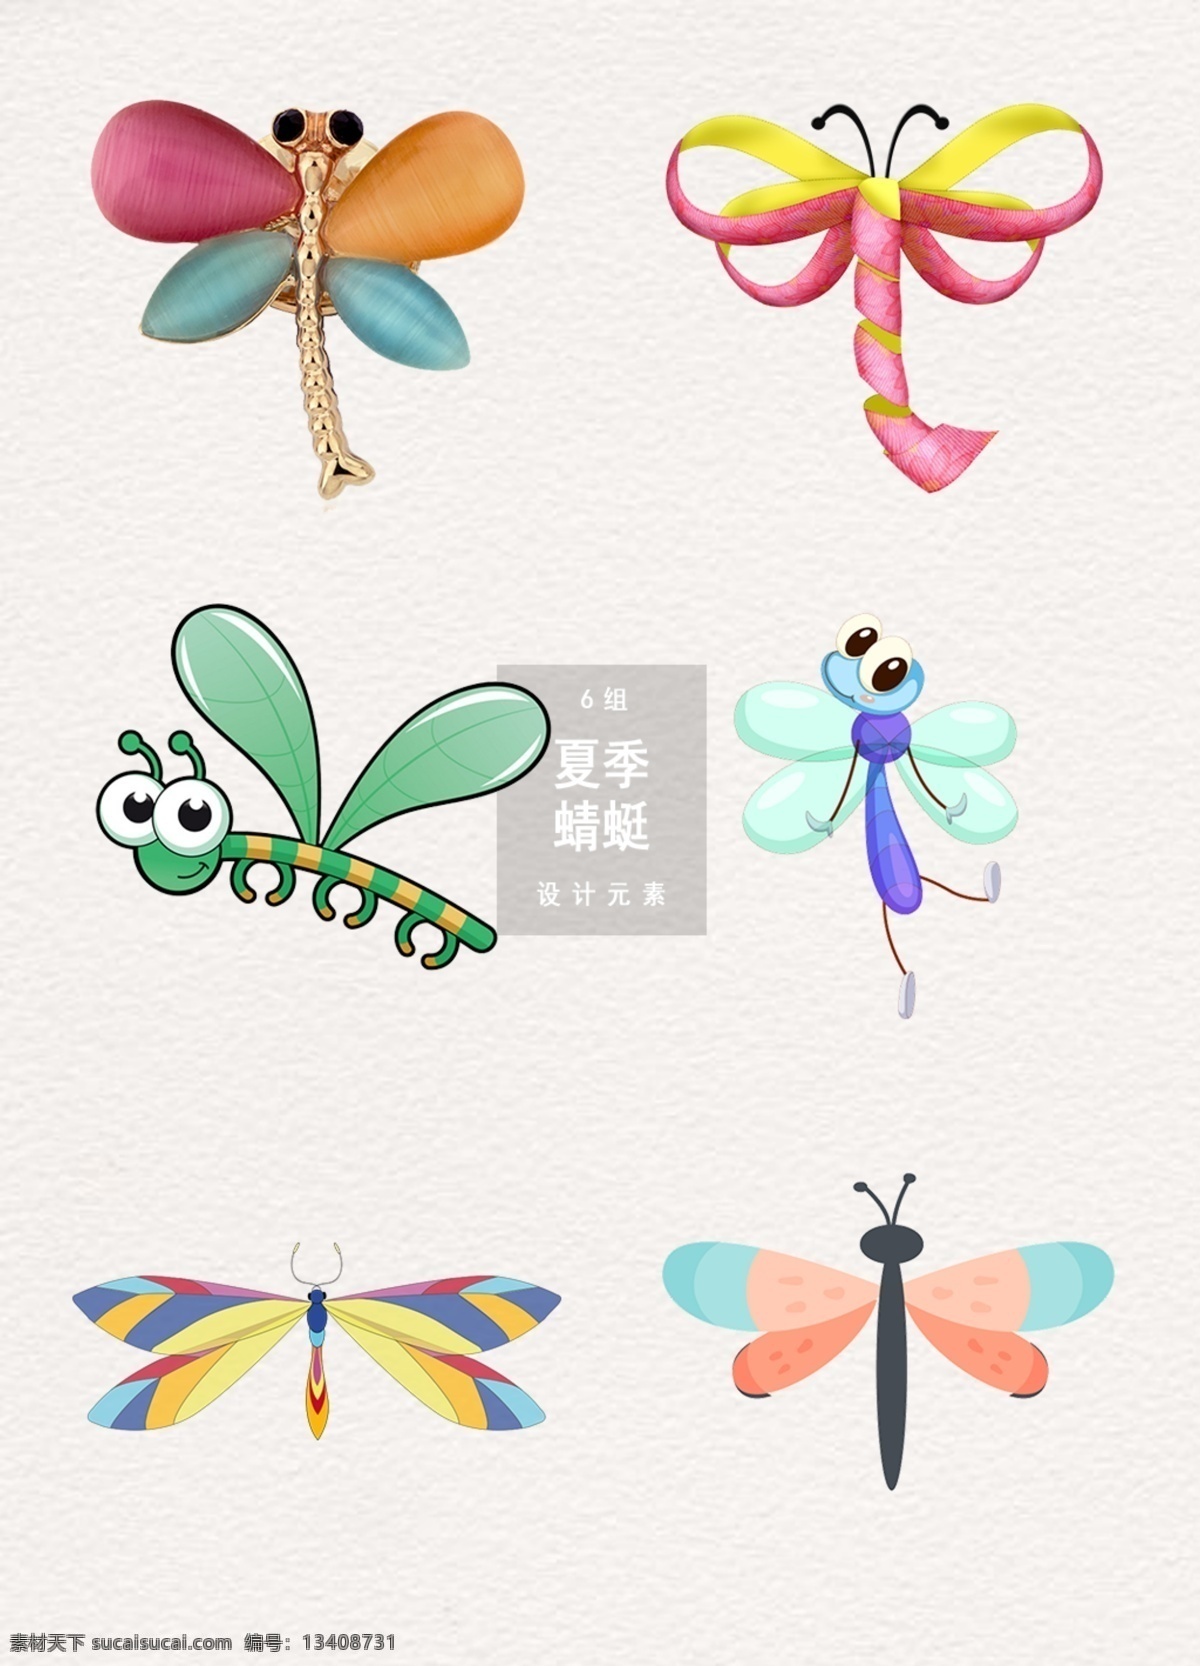 可爱 卡通 夏季 蜻蜓 设计素材 立夏 夏天 卡通蜻蜓 夏季蜻蜓